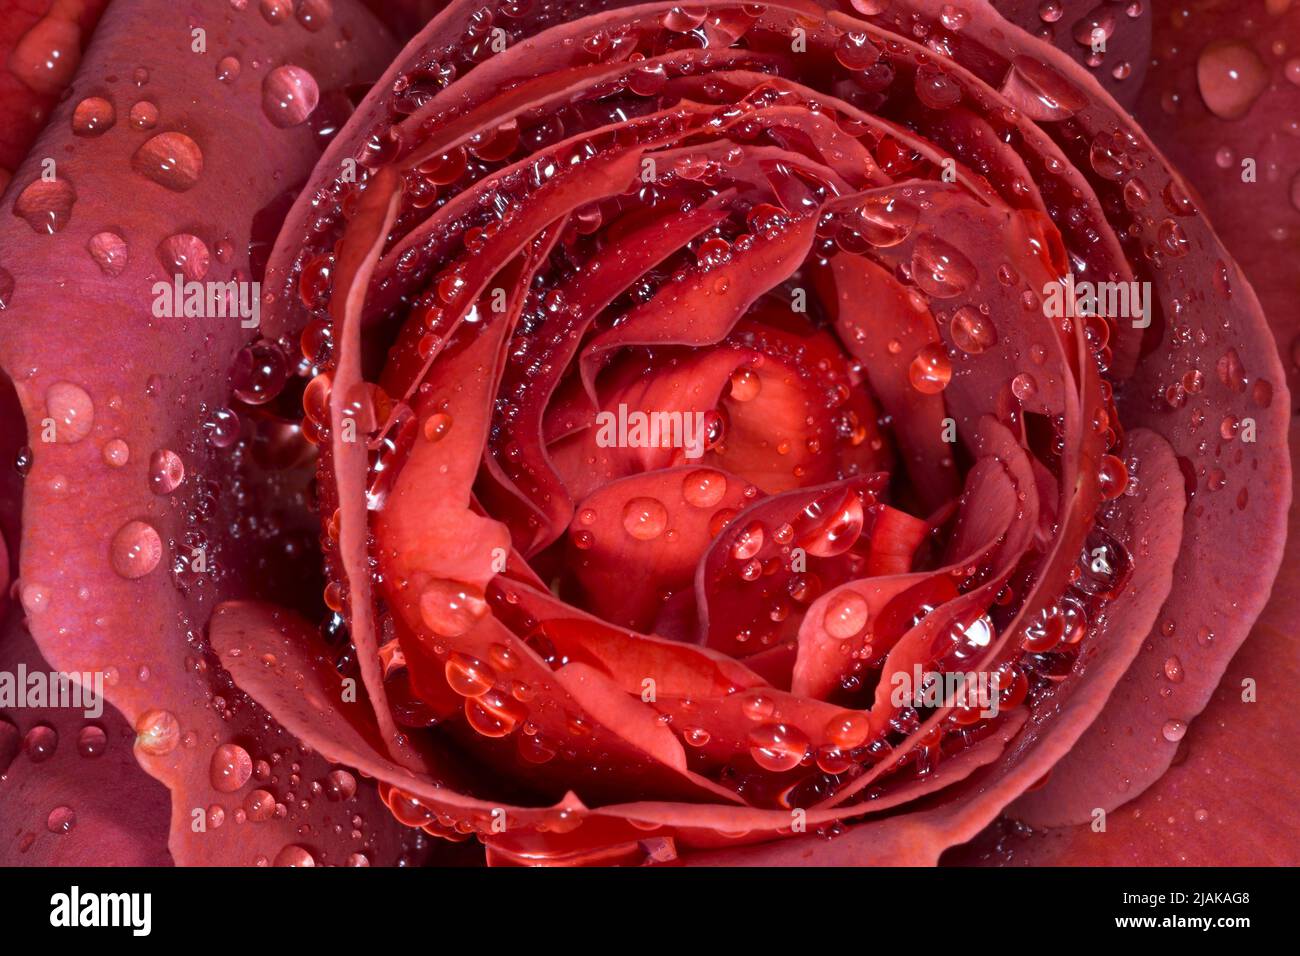 Nahaufnahme einer leidenschaftlichen roten Rosenblüte, die mit Regentropfen bedeckt ist Stockfoto